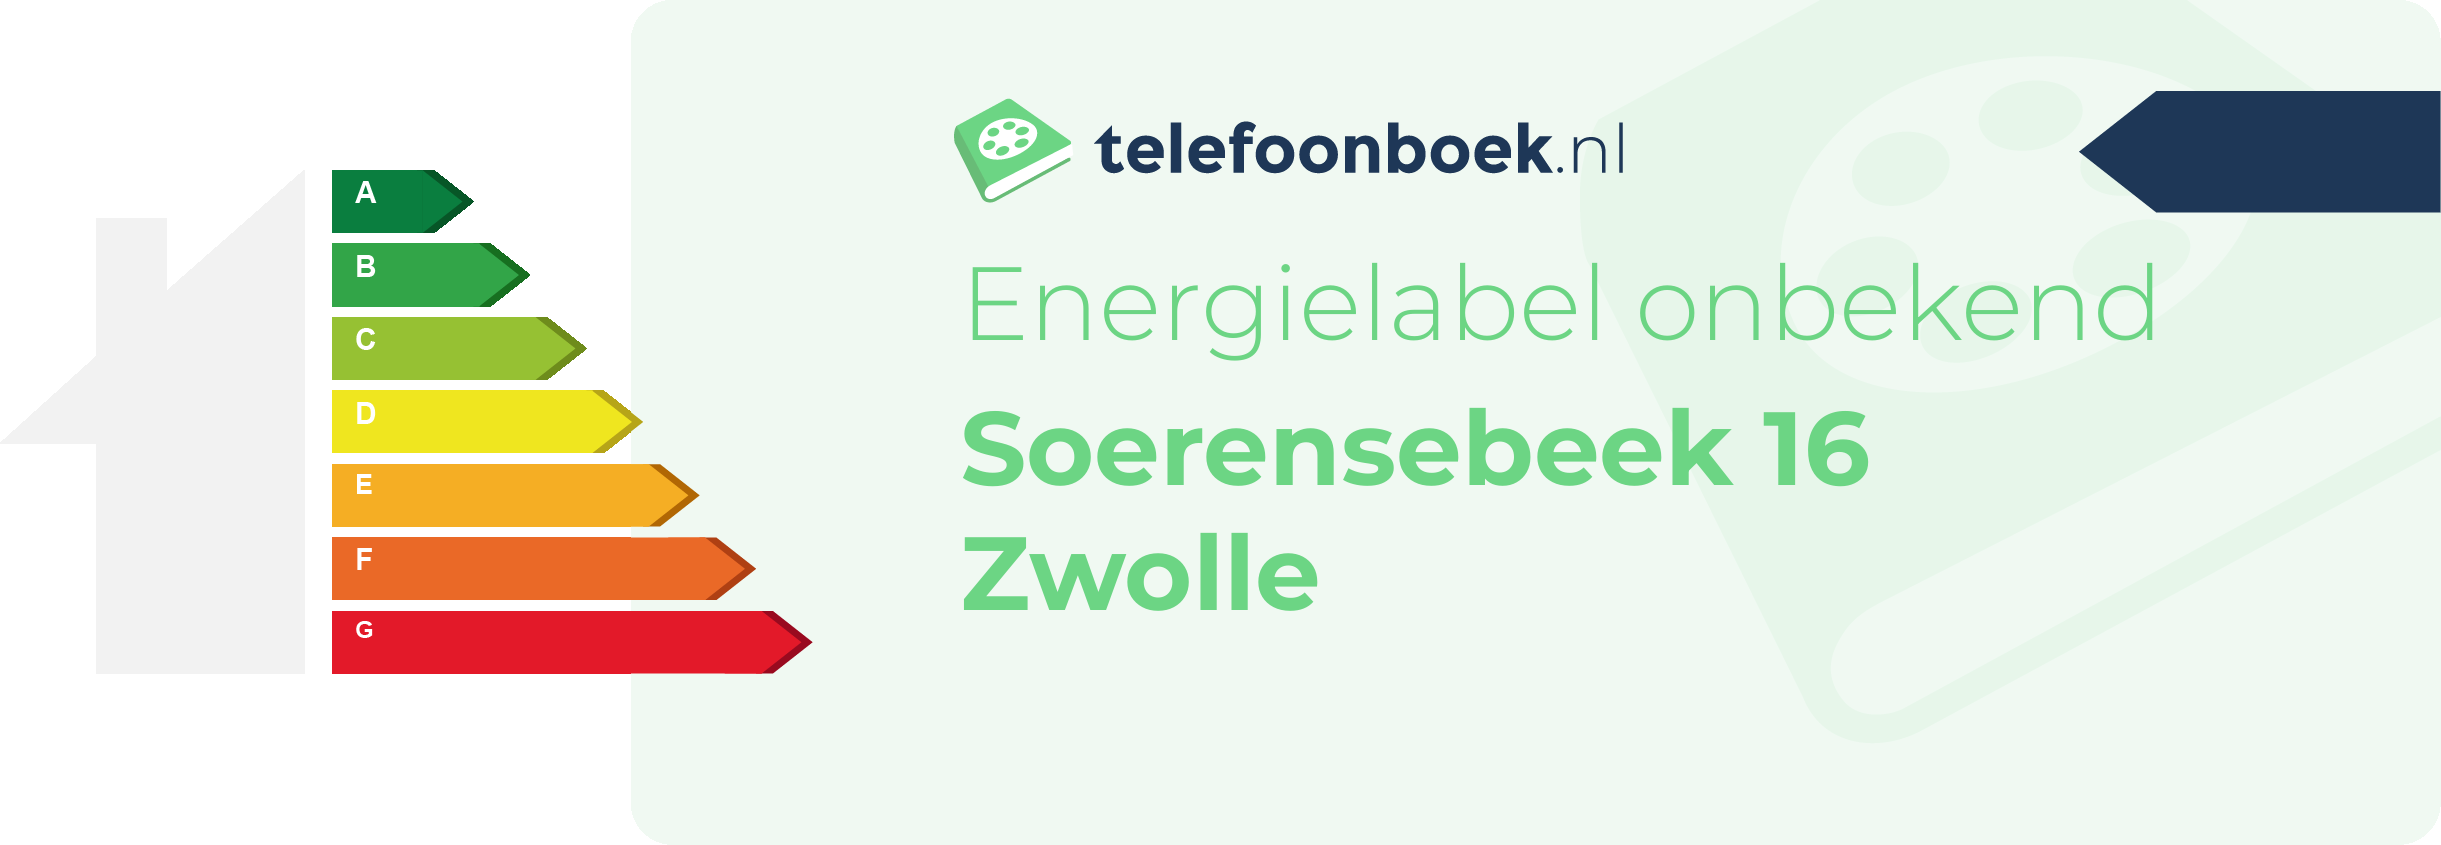 Energielabel Soerensebeek 16 Zwolle